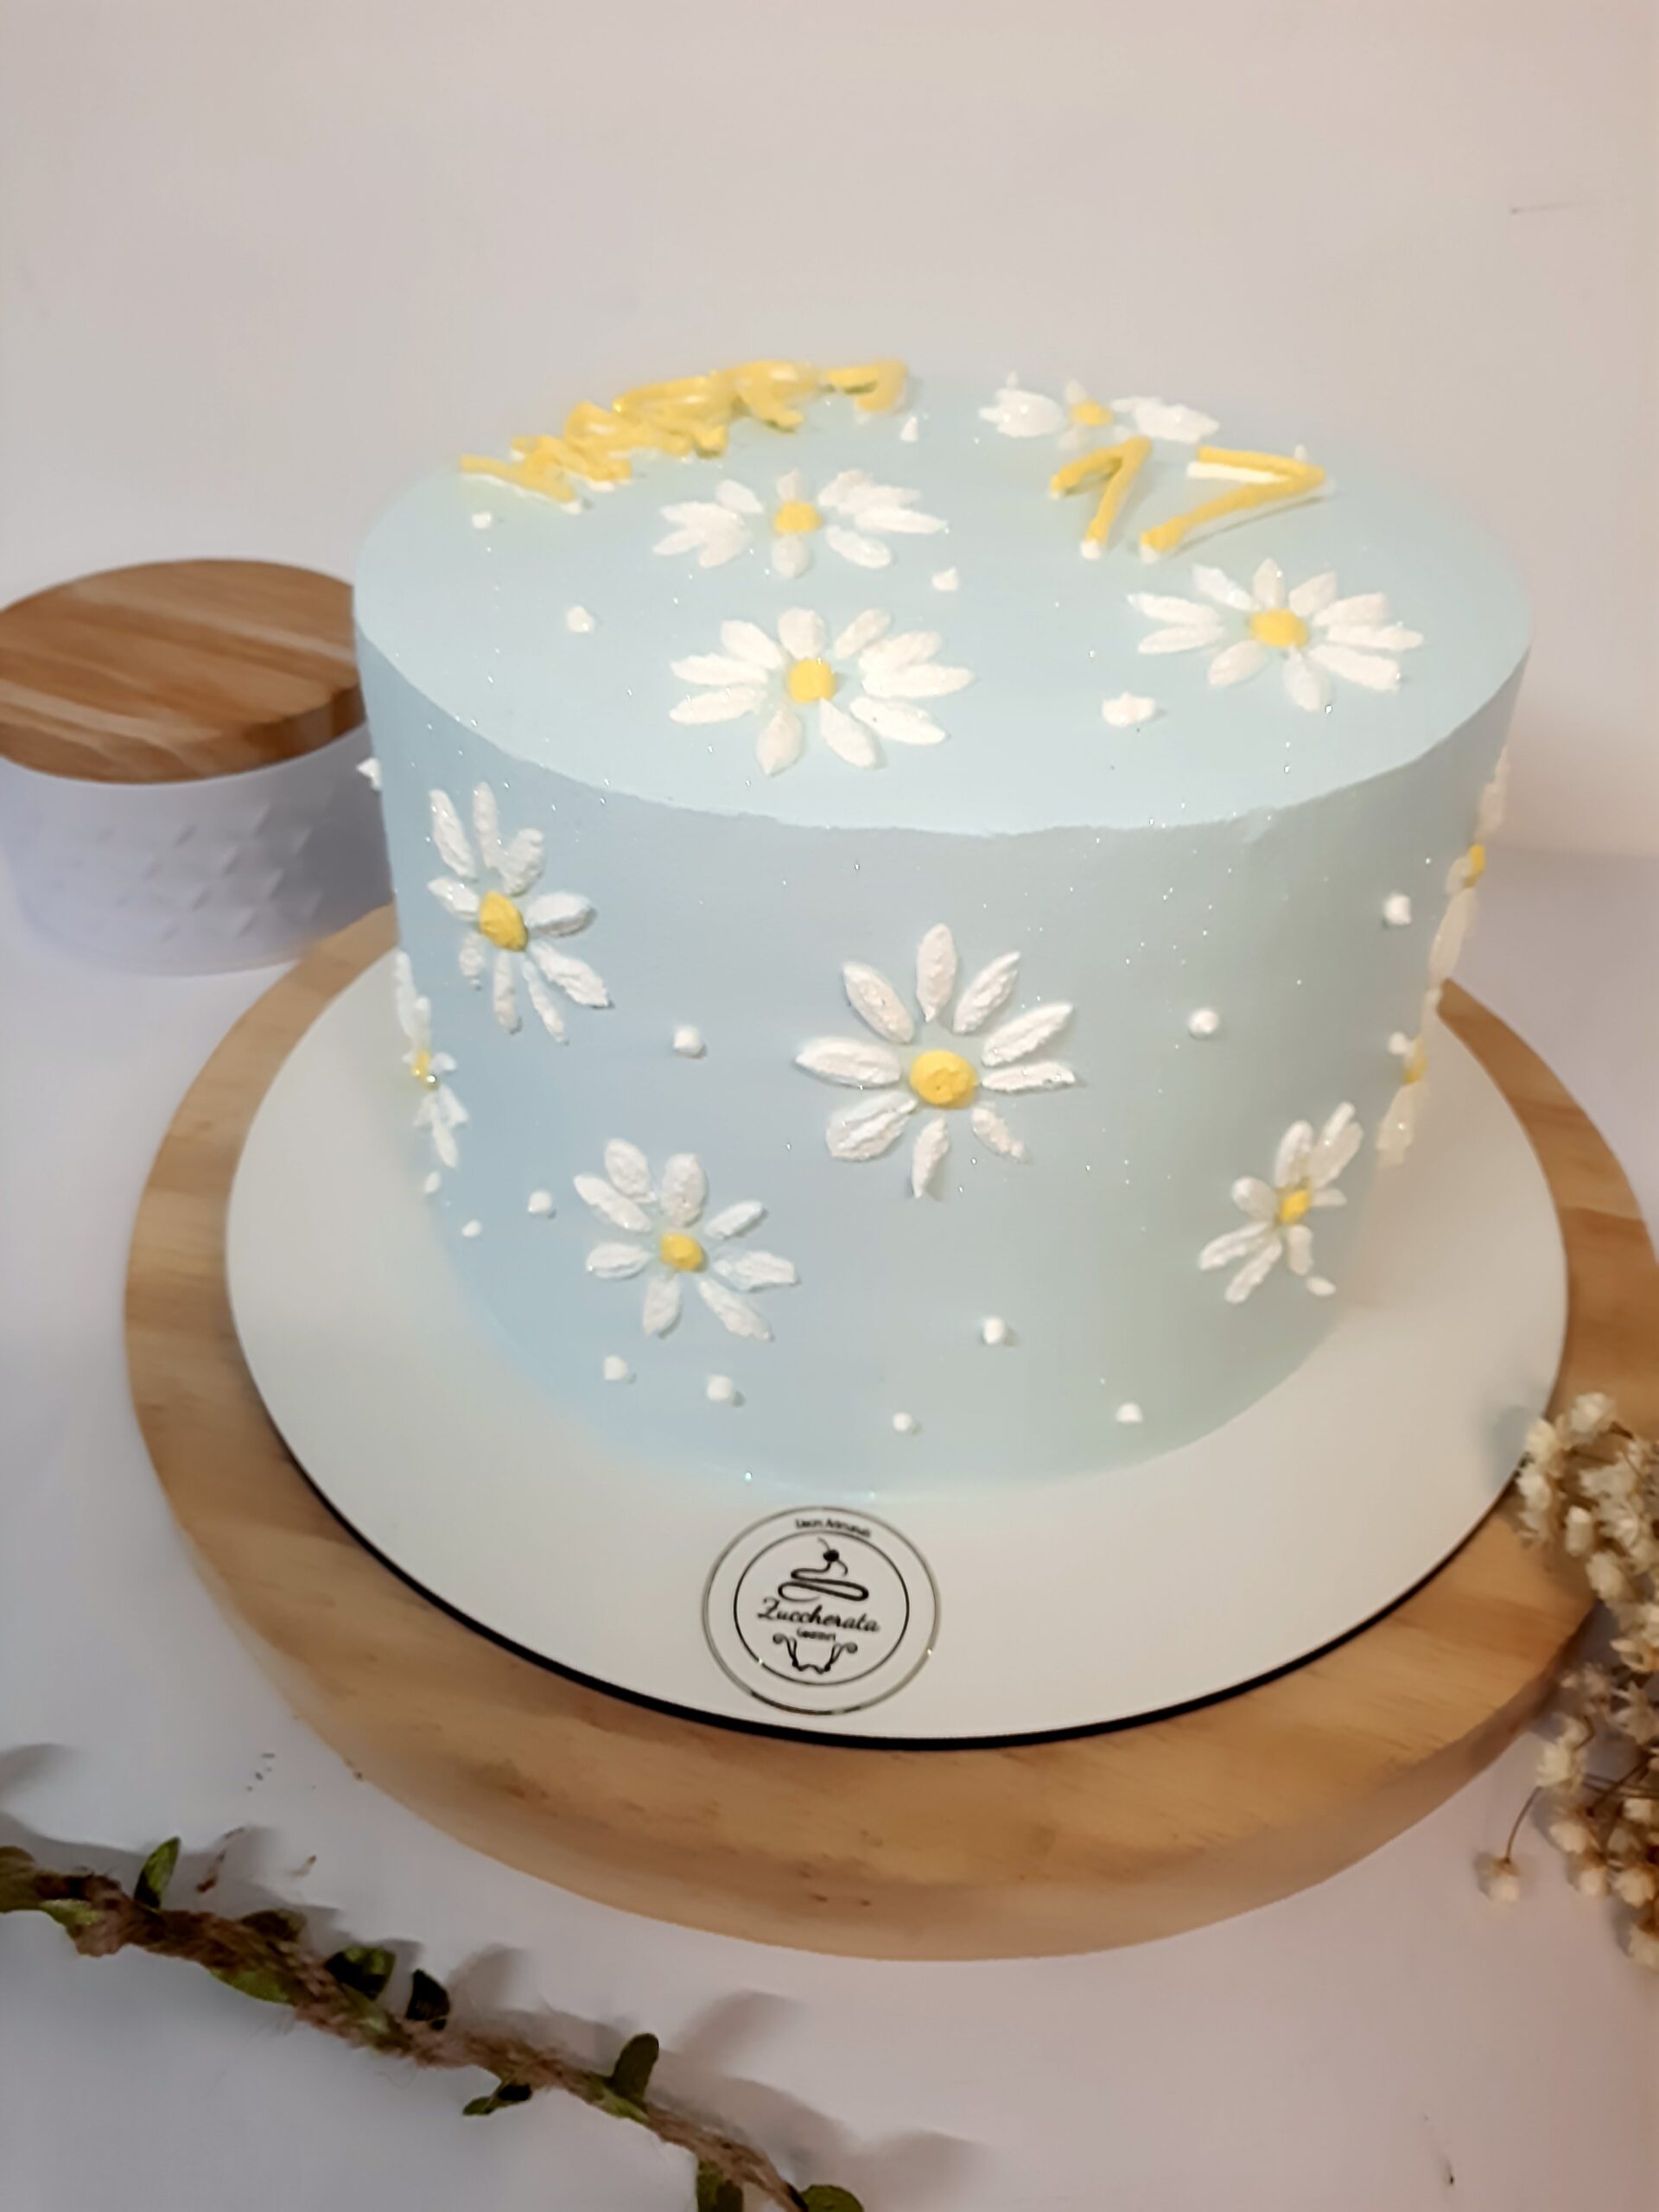 Bolo de Aniversário para Adulto - Cake Designer - Decorados - Zona Sul